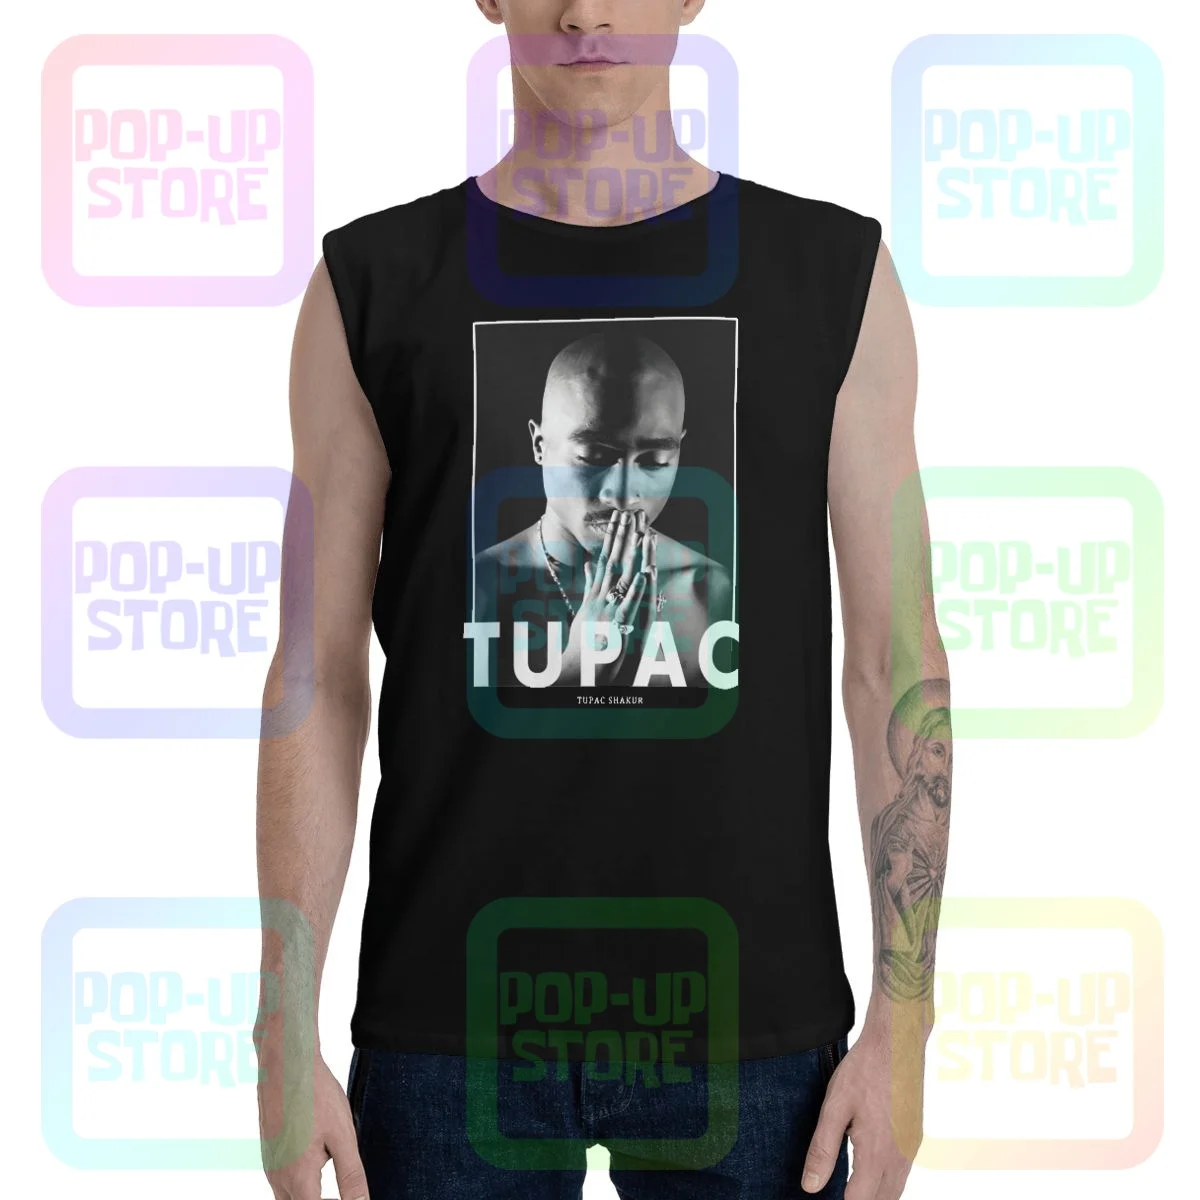 Tupac Shakur 2Pac Smoking Cool T-shirt Vest Tank Top Men Women Unisex 469 